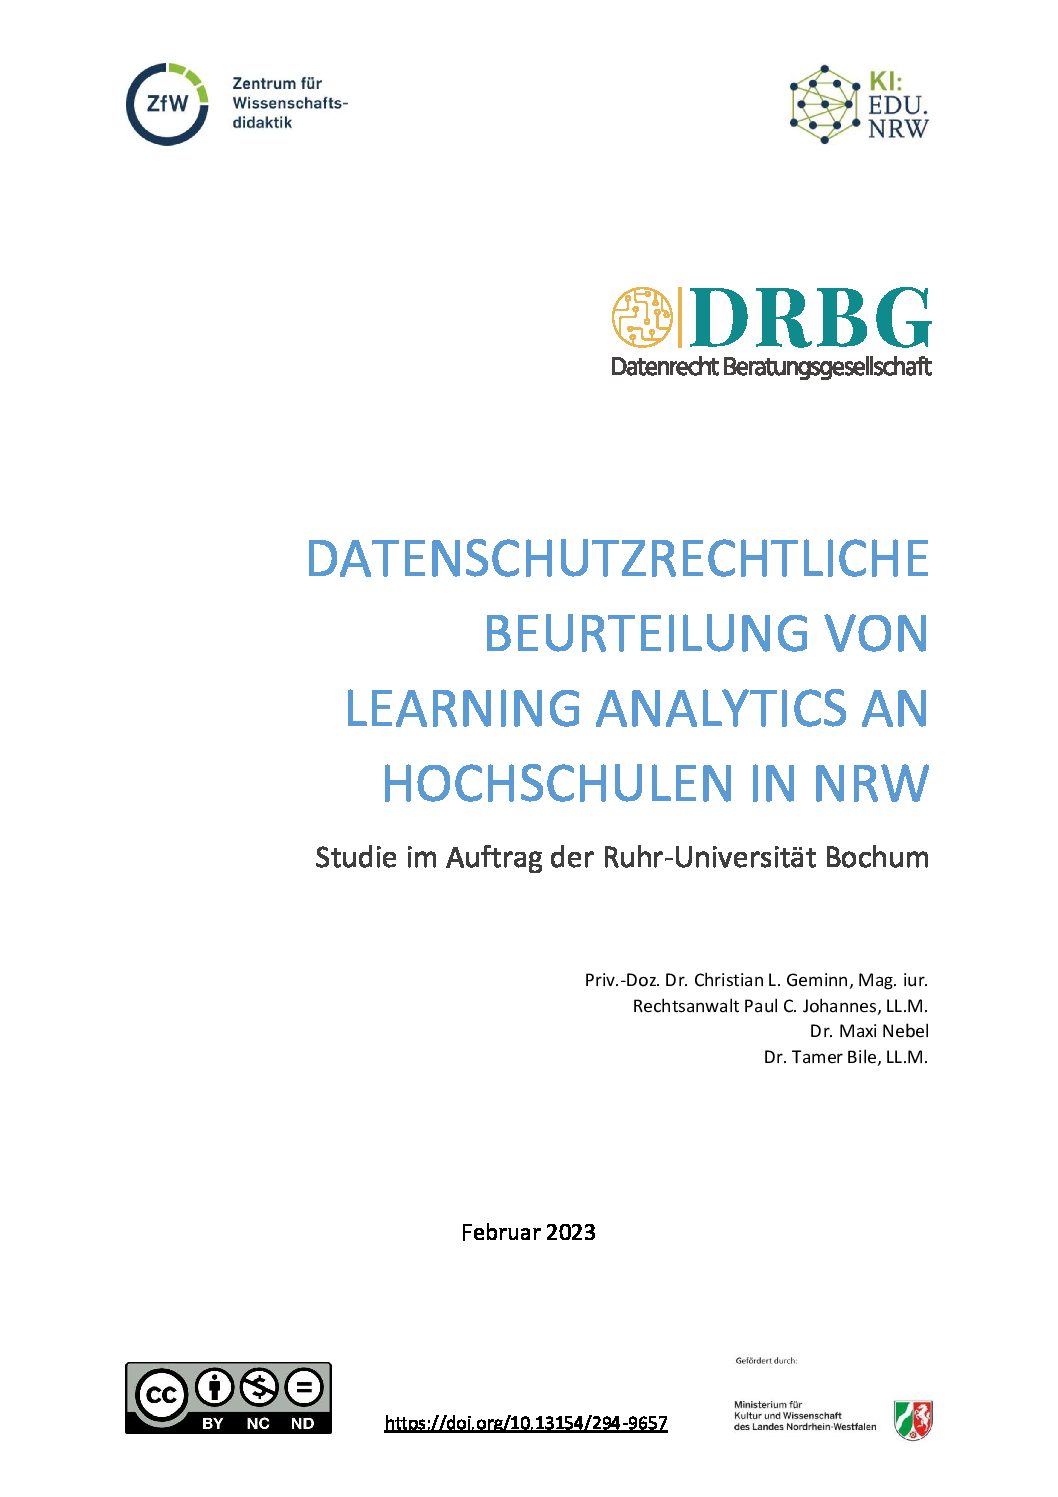 Learning Analytics an Hochschulen in NRW